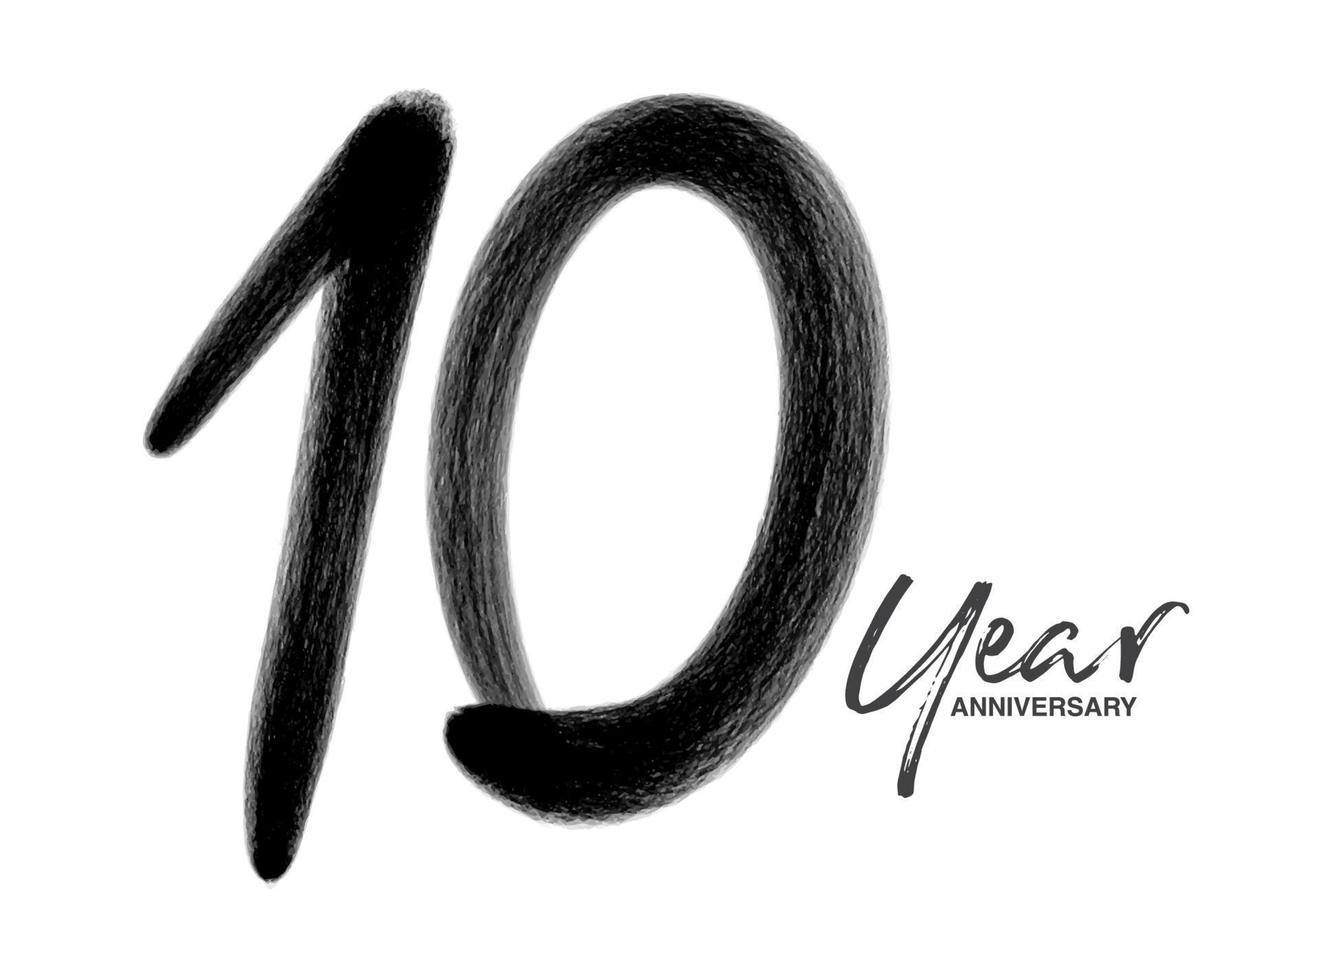 Modello vettoriale per la celebrazione dell'anniversario di 10 anni, design del logo di 10 anni, decimo compleanno, numeri di lettere nere disegno a pennello schizzo disegnato a mano, illustrazione vettoriale del design del logo numero